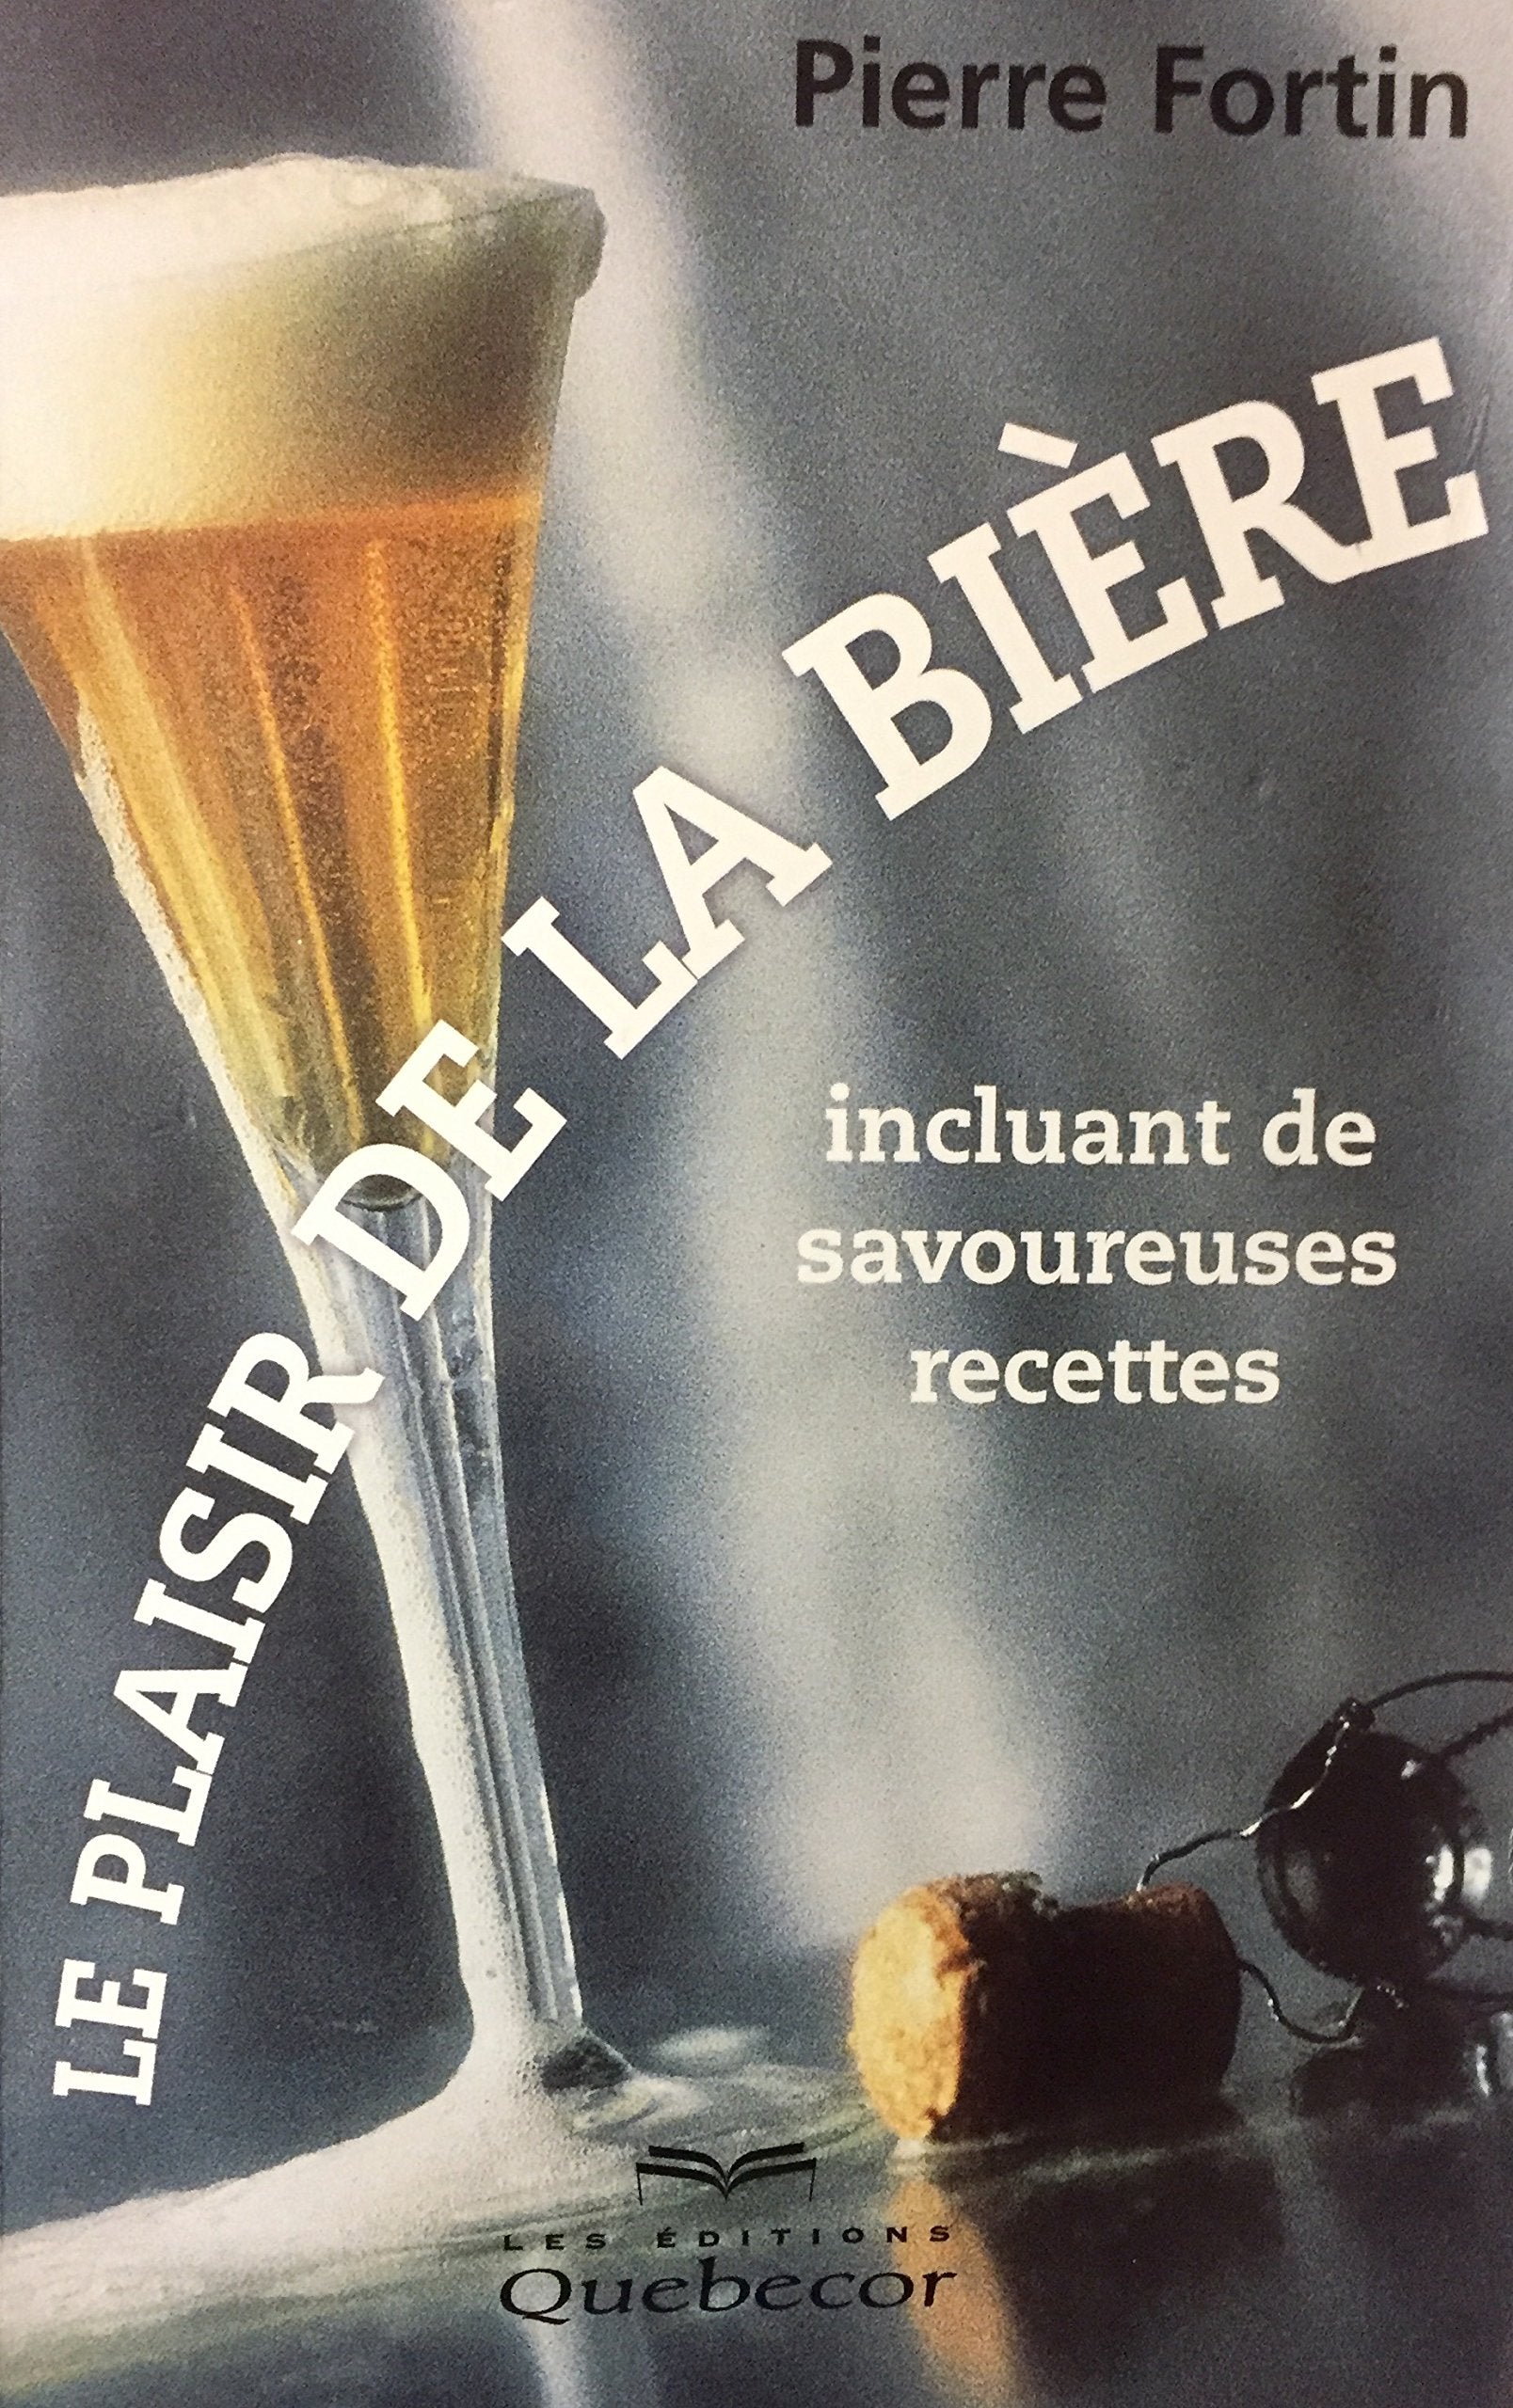 Livre ISBN 2764003536 Le plaisir de la bière (incluant de savoureuses recettes) (Pierre Fortin)